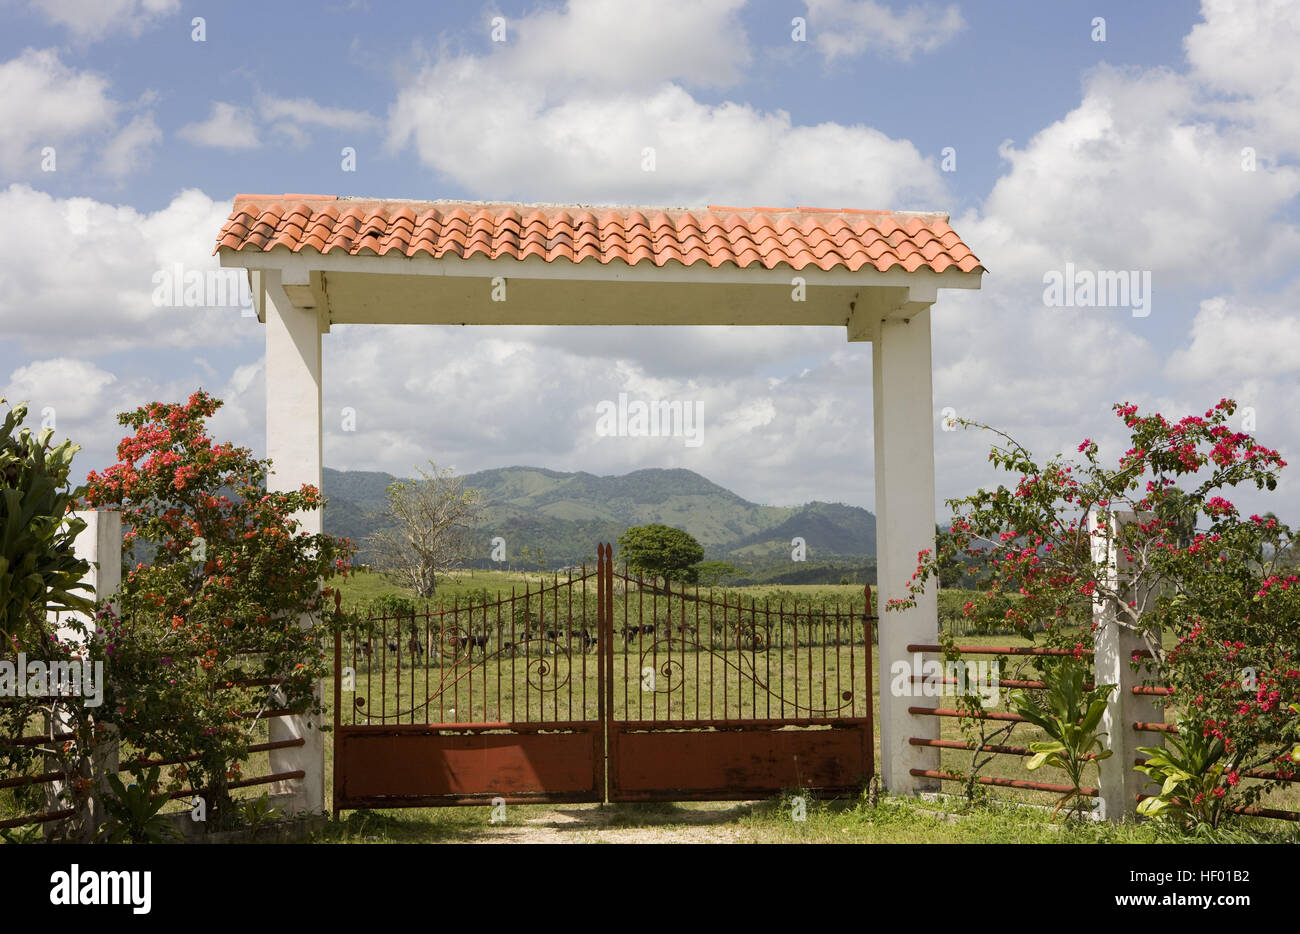 Puerta de entrada a una hacienda (finca), República Dominicana, El Caribe  Fotografía de stock - Alamy